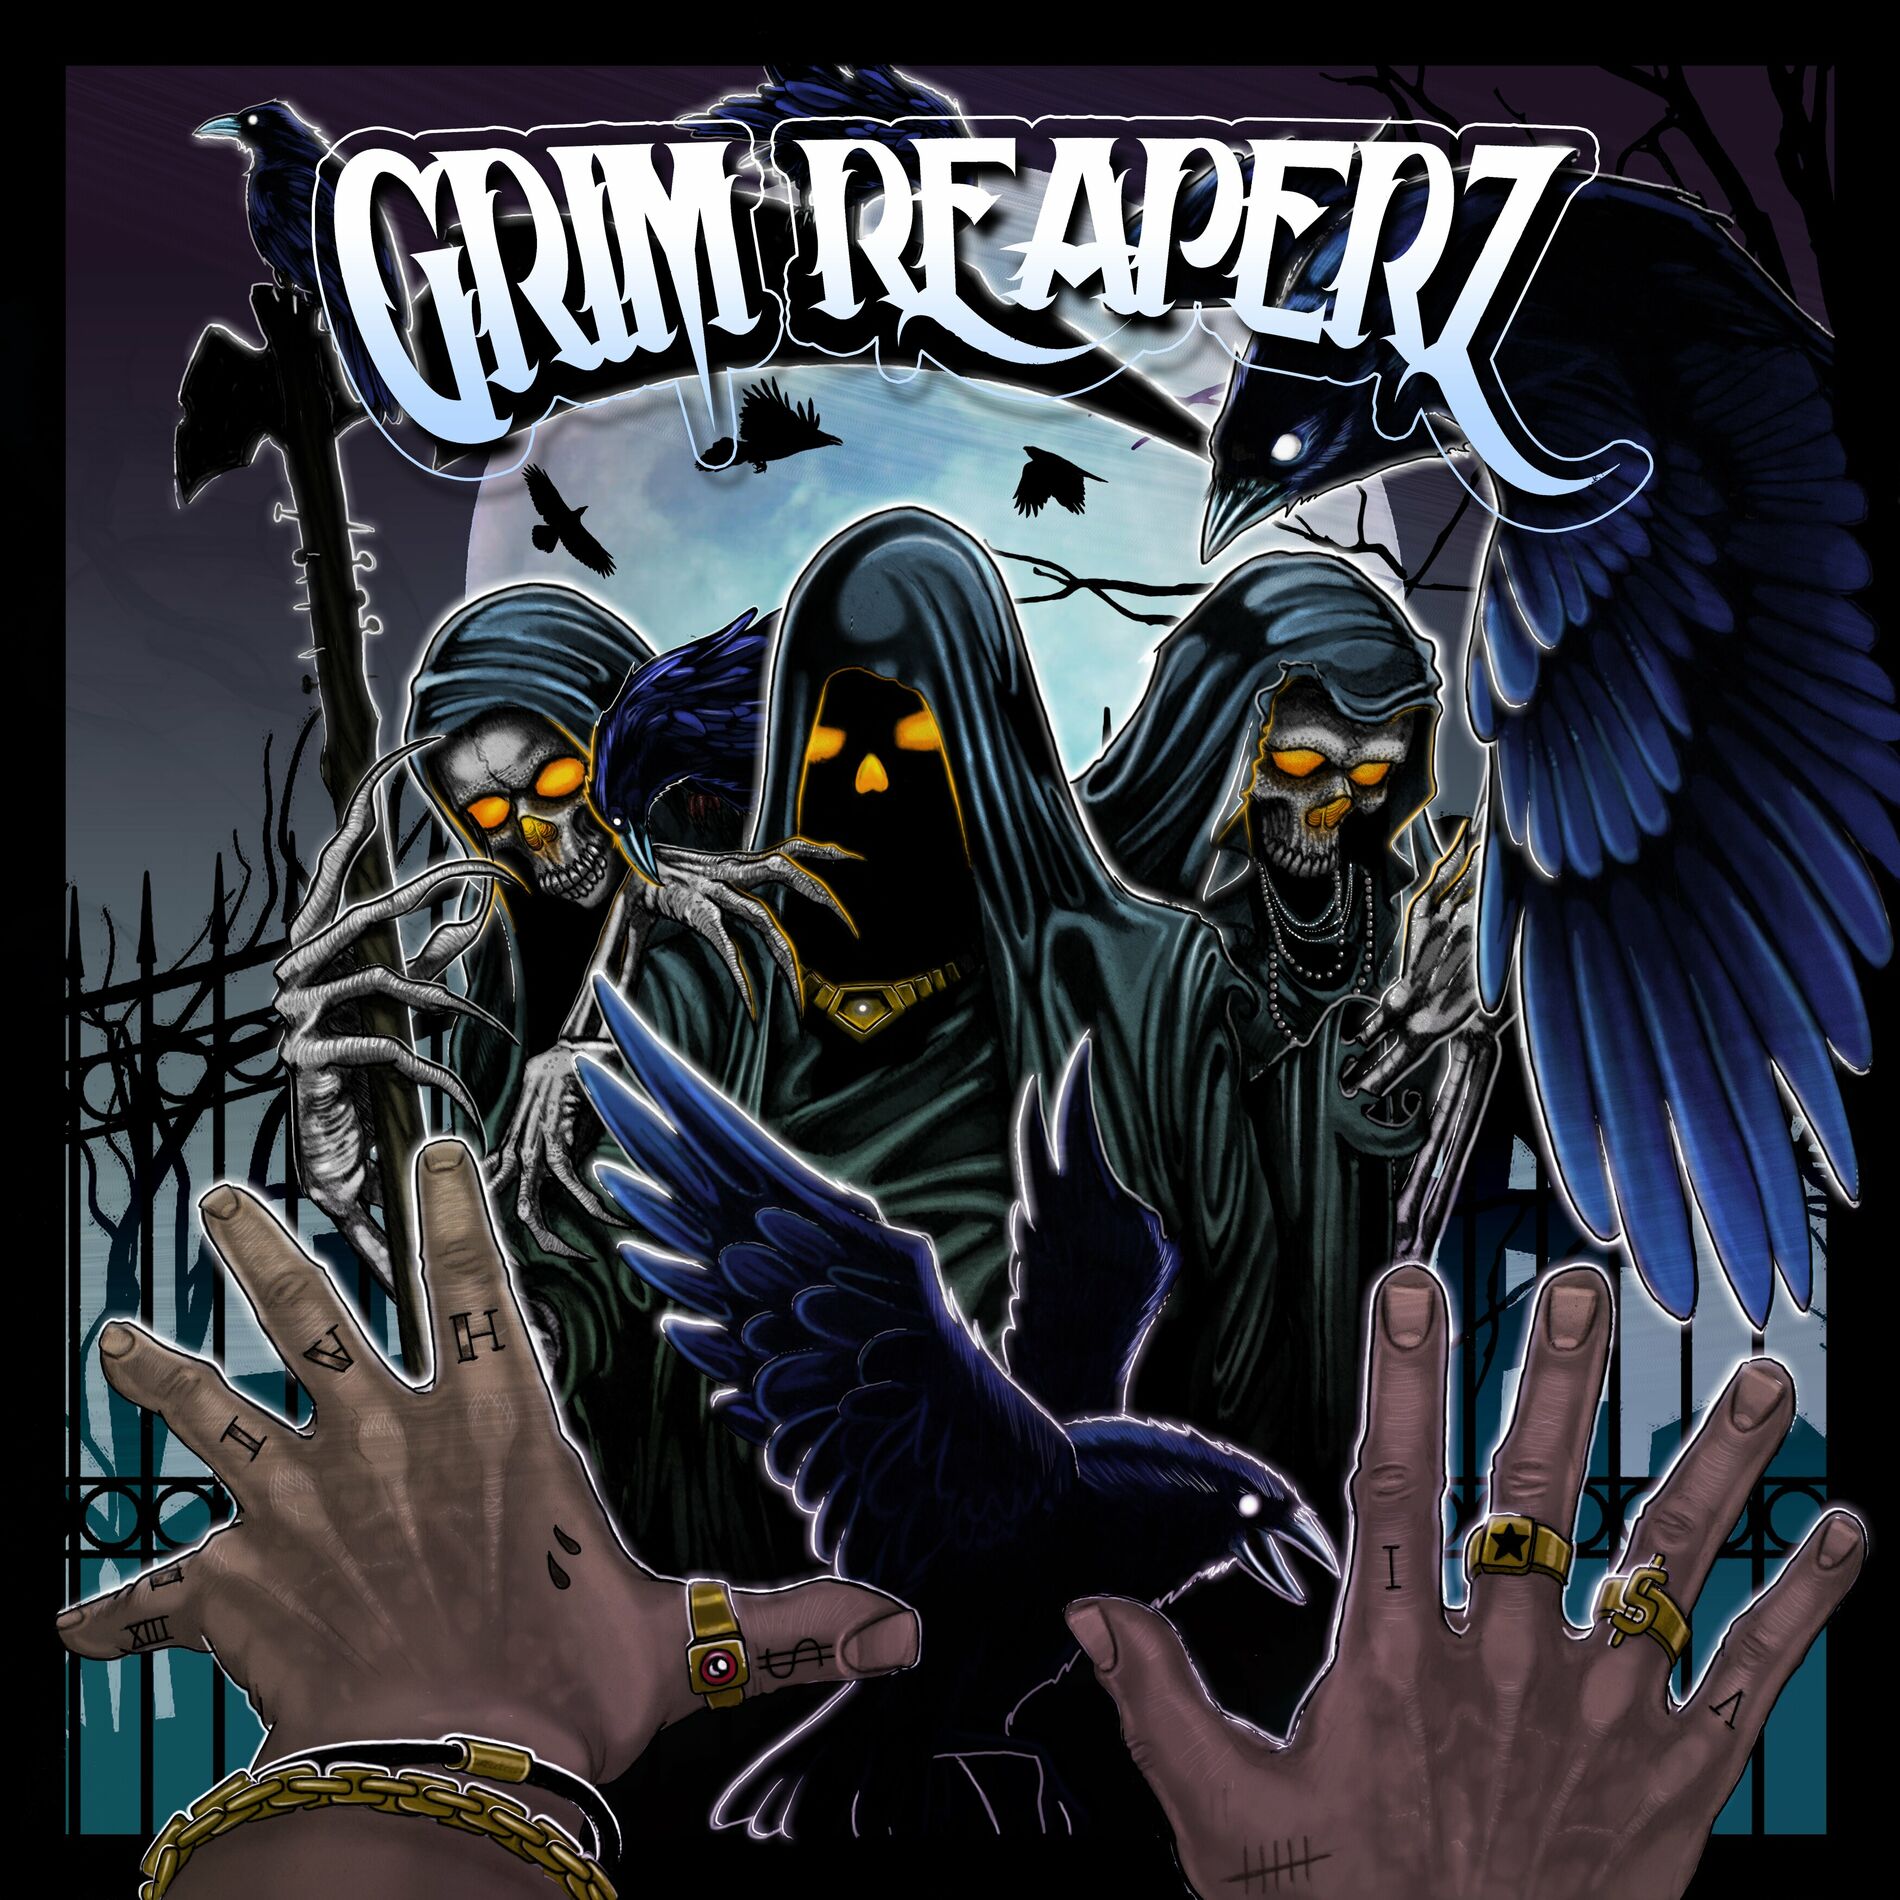 Grim Reaperz: albums, songs, playlists | Listen on Deezer